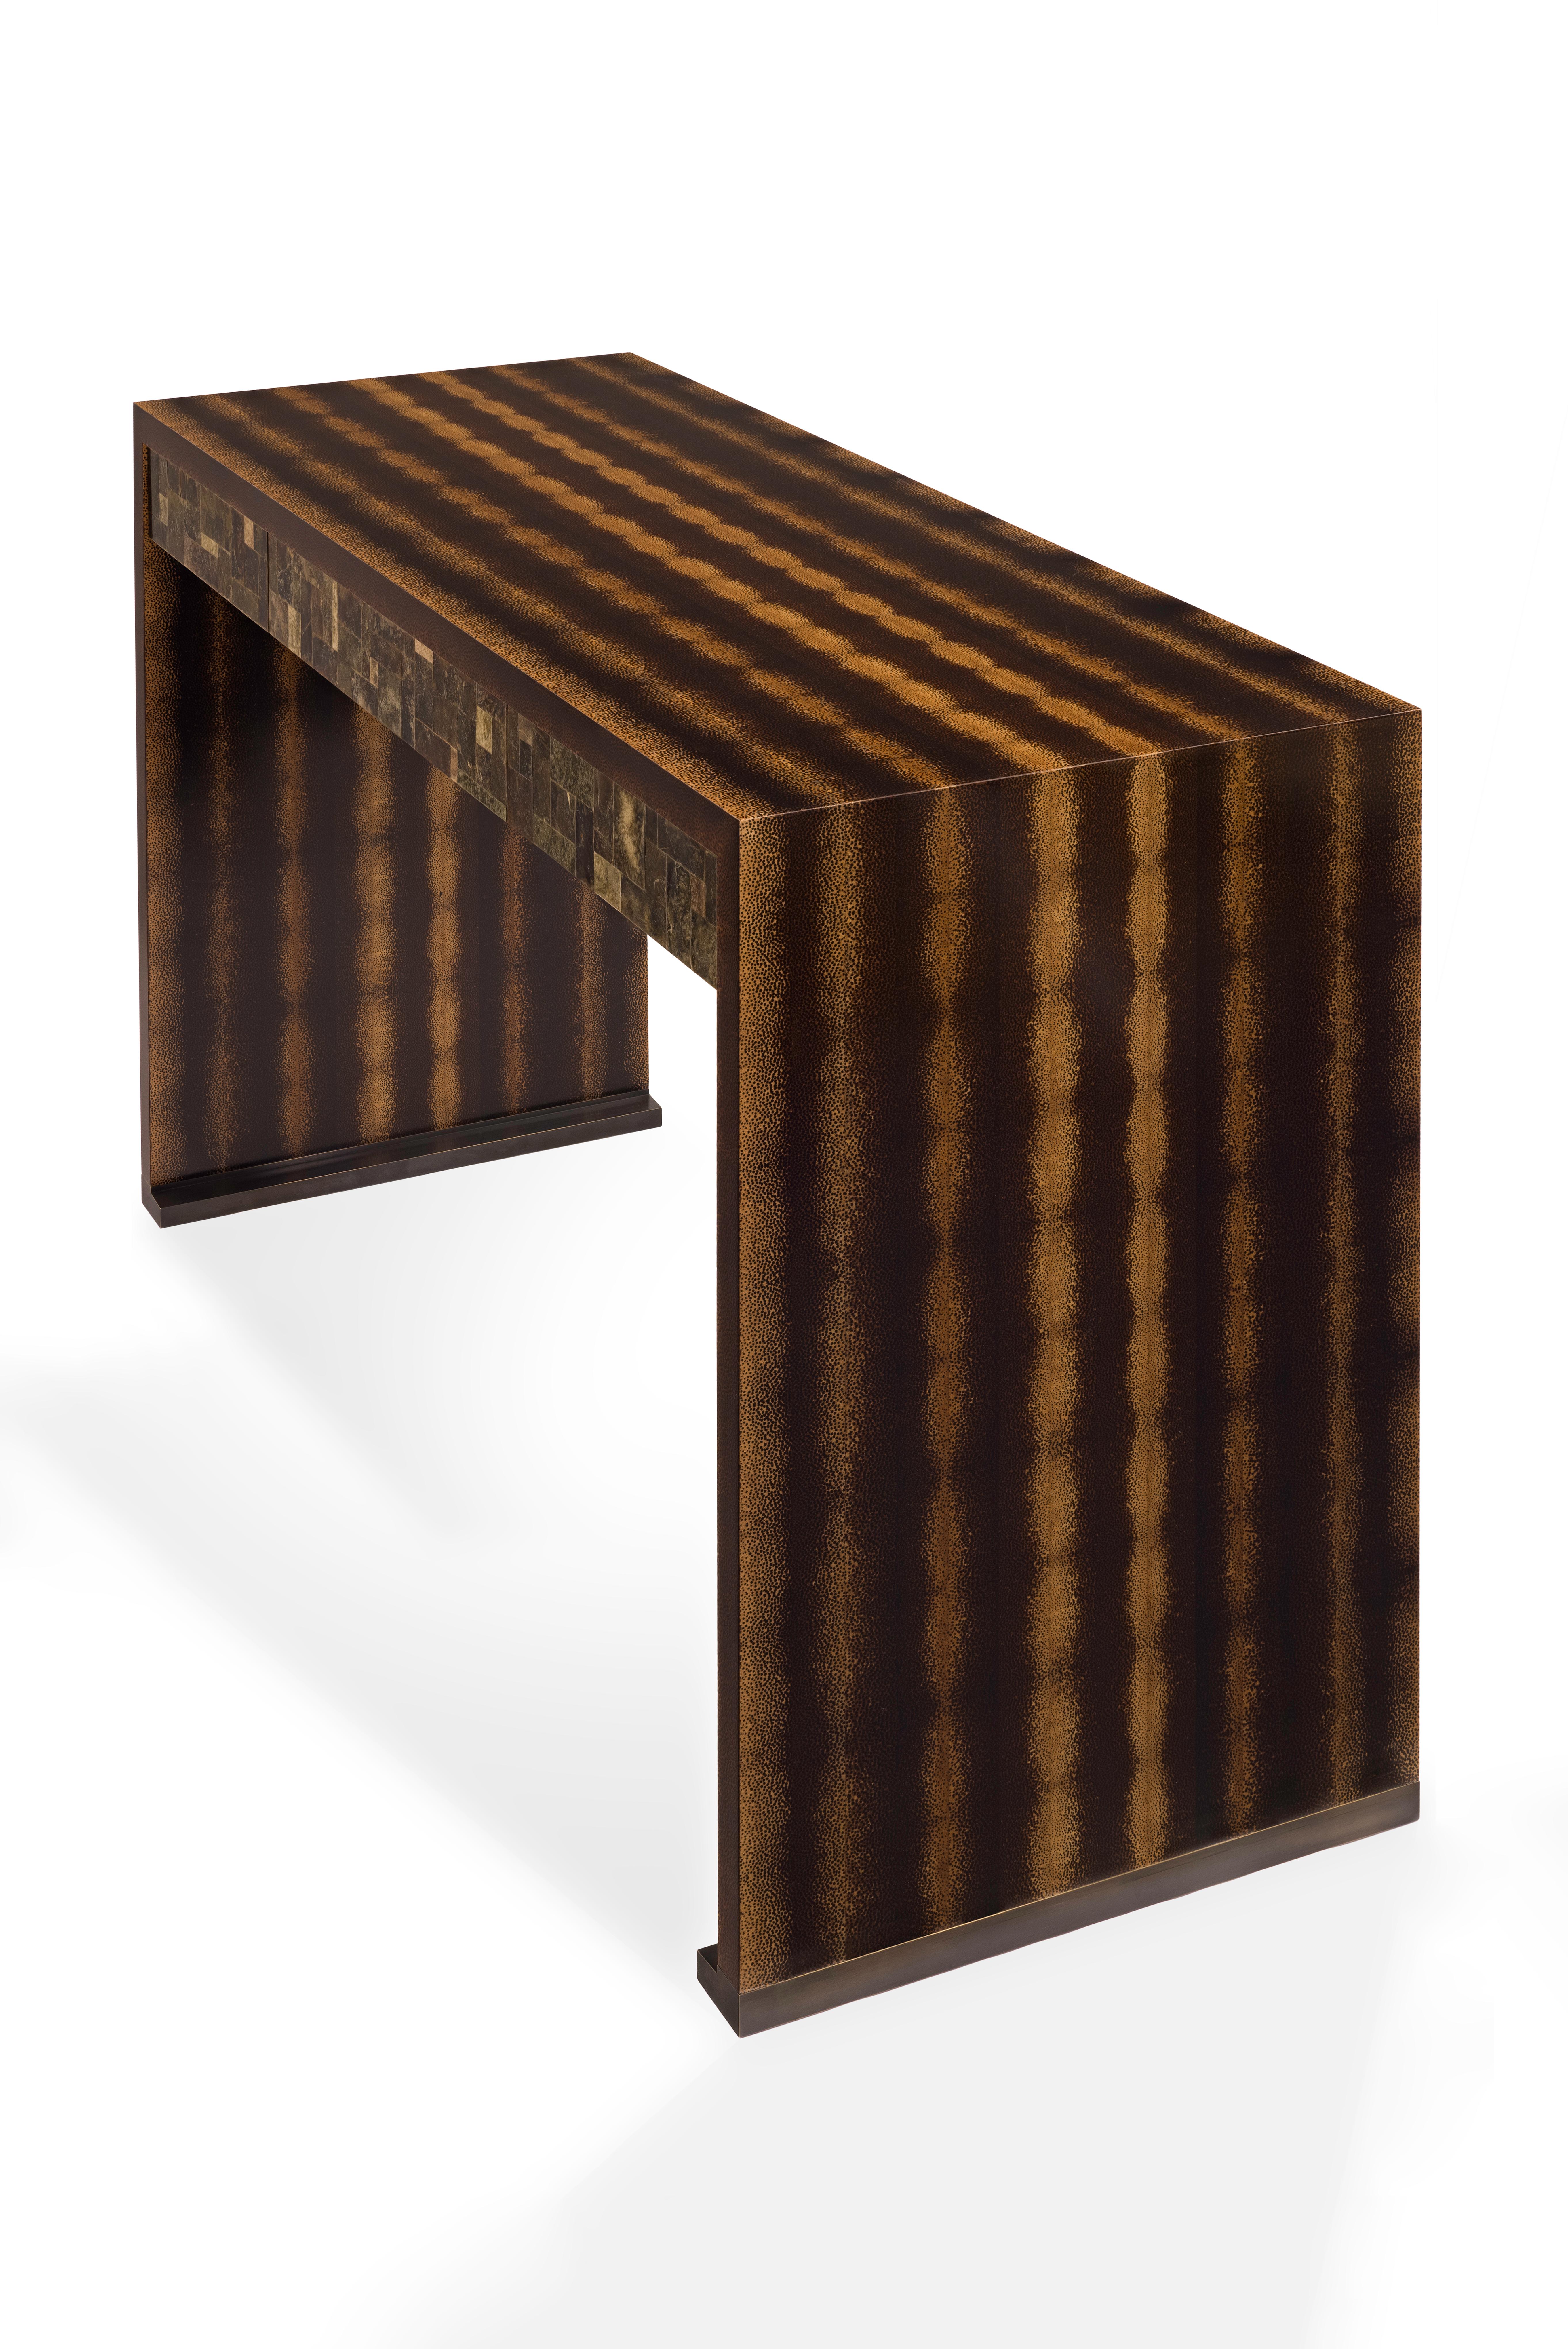 Entworfen von Jean-Paul Viollet.
Schreibtisch aus Palmenholz, Glimmer und Bronze. 